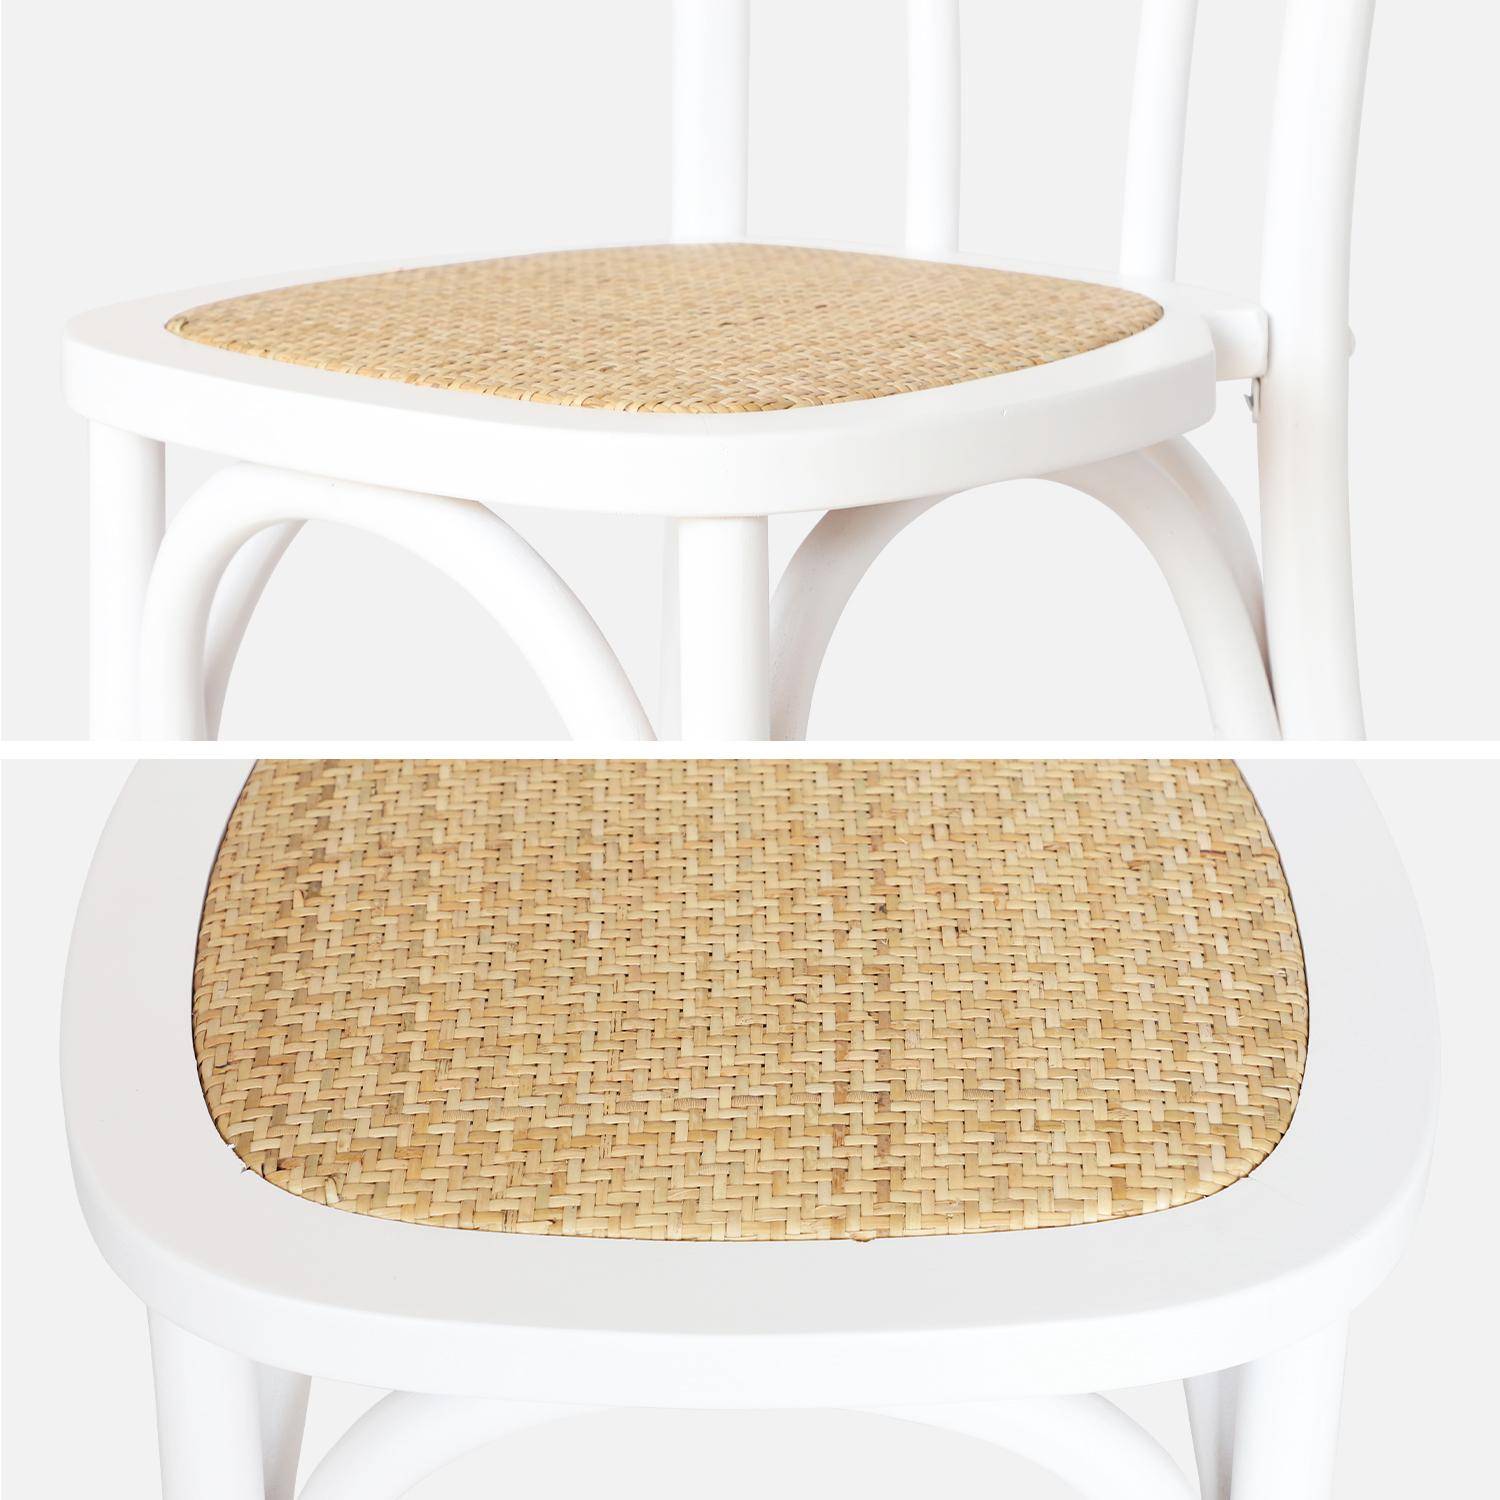 Lot de deux chaises vintage en bois avec assise en rotin et dossier arrondi coloris blanc,sweeek,Photo5